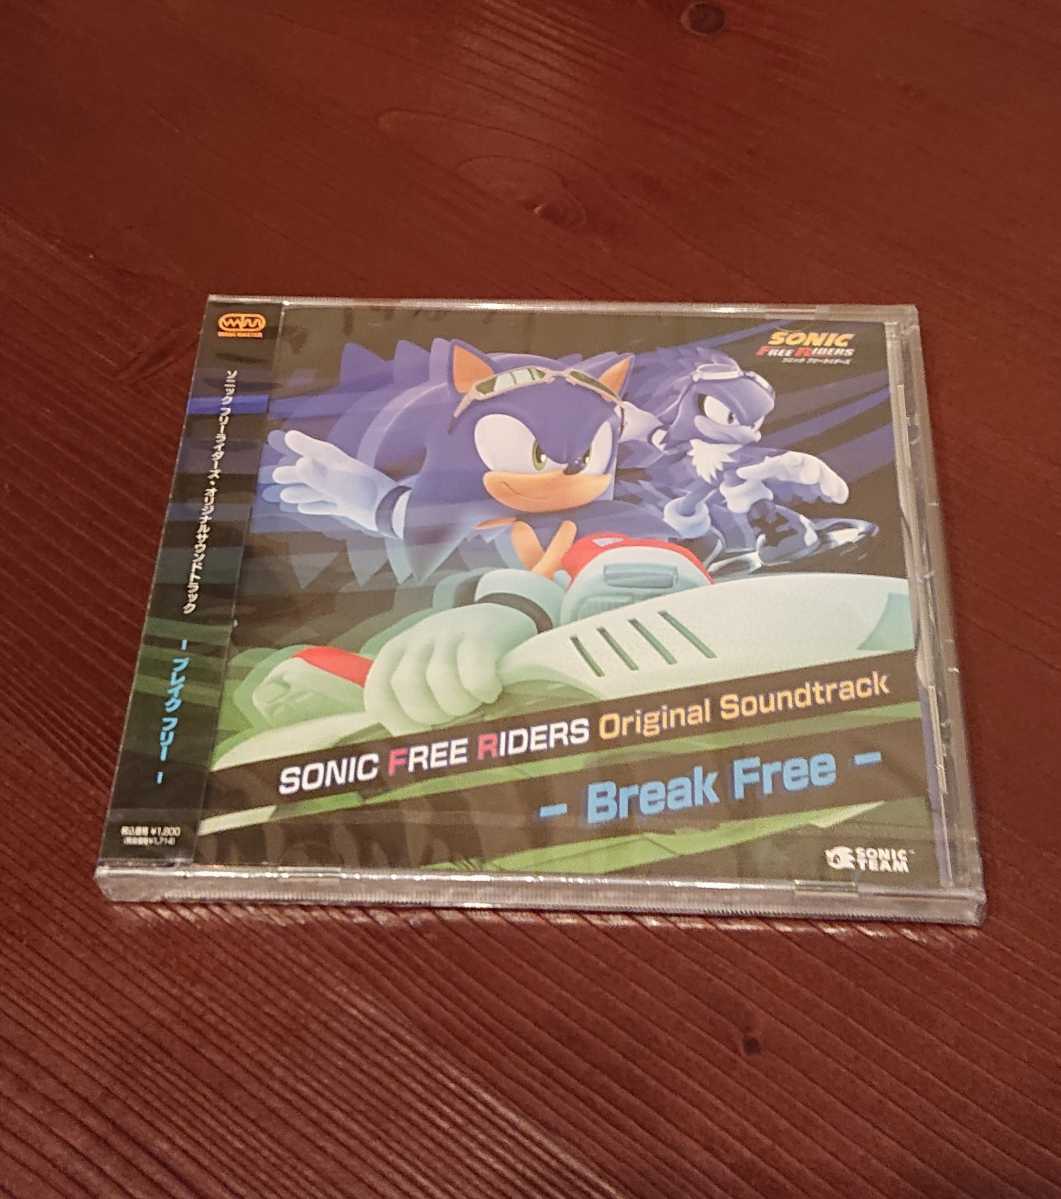 「ソニック フリーライダーズ」オリジナルサウンドトラック 未開封 CD SONIC FREE RIDERS Original Soundtrack -Break Free- SEGA XBOX360_画像3